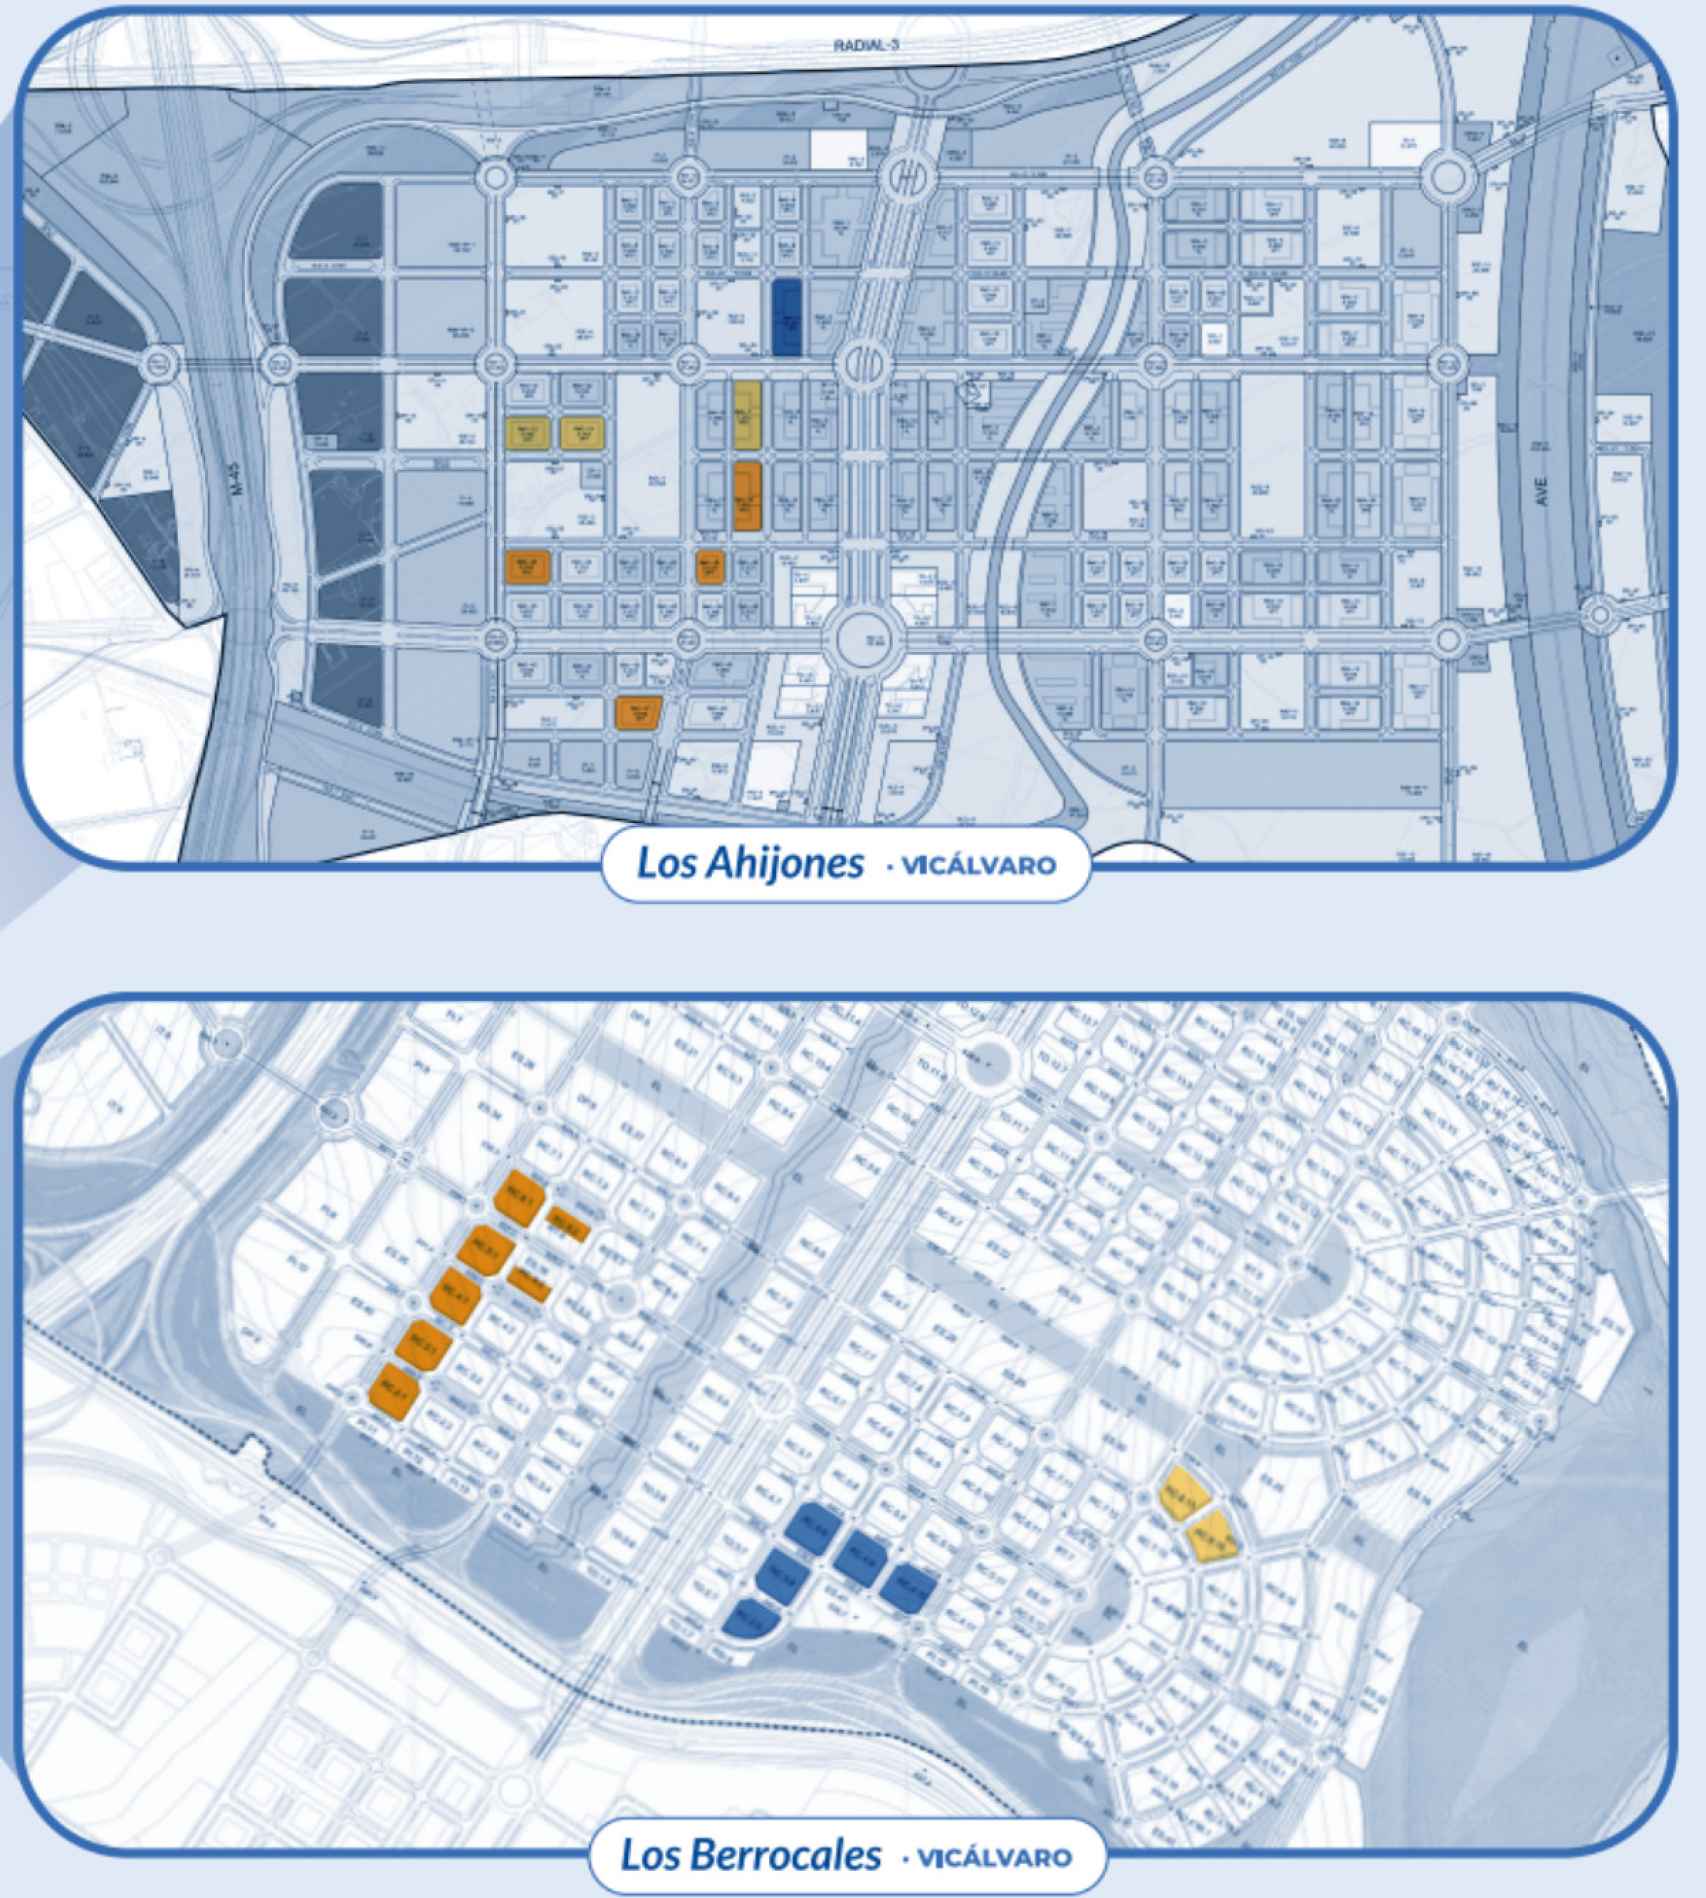 En azul oscuro, las parcelas de Los Ahijones y Los Berrocales donde la EMVS construye viviendas mediante gestión directa. En naranja y amarillo, las parcelas con derecho de superficie.